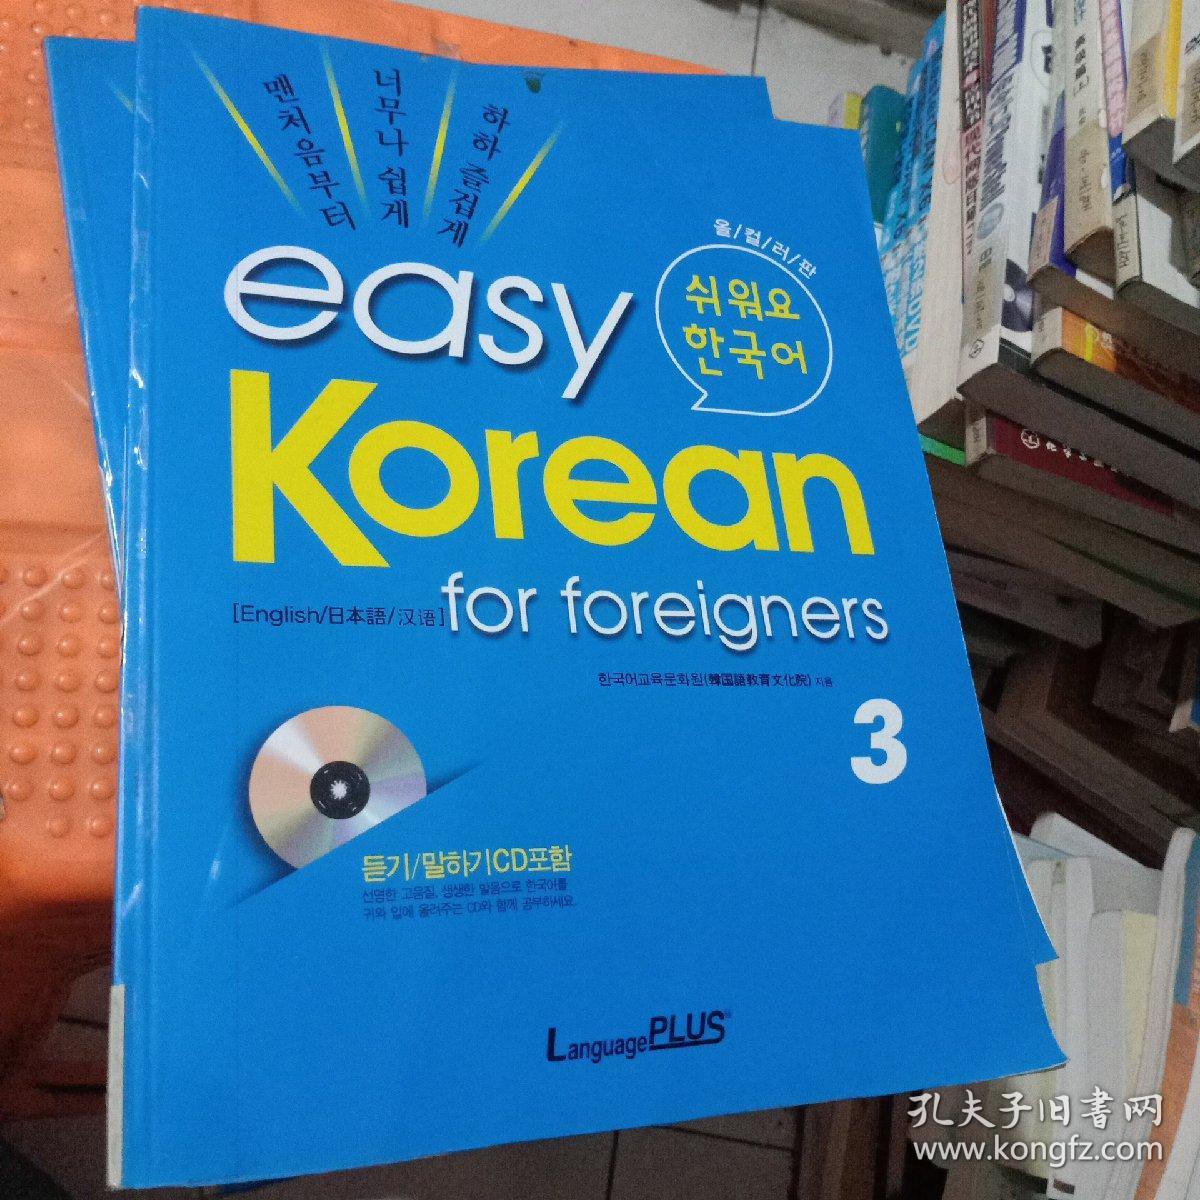 easy korean for foreigners3 有光盘 看图